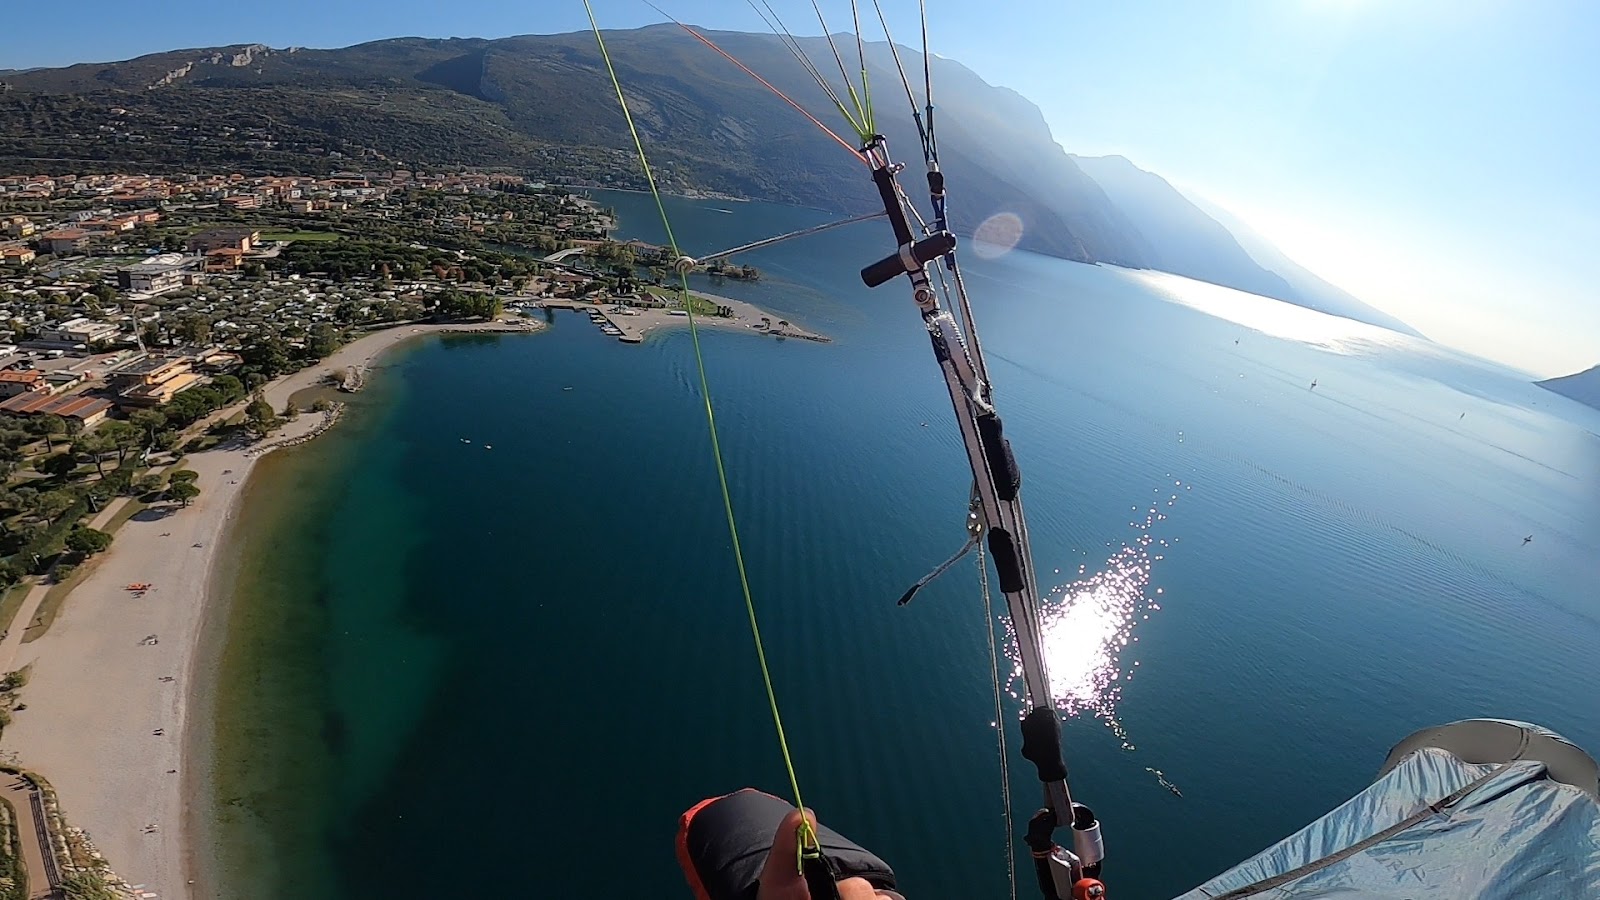 La Epica e Feicst partner nel primo evento endurance di volo libero sull'Italia celebrano l'acqua